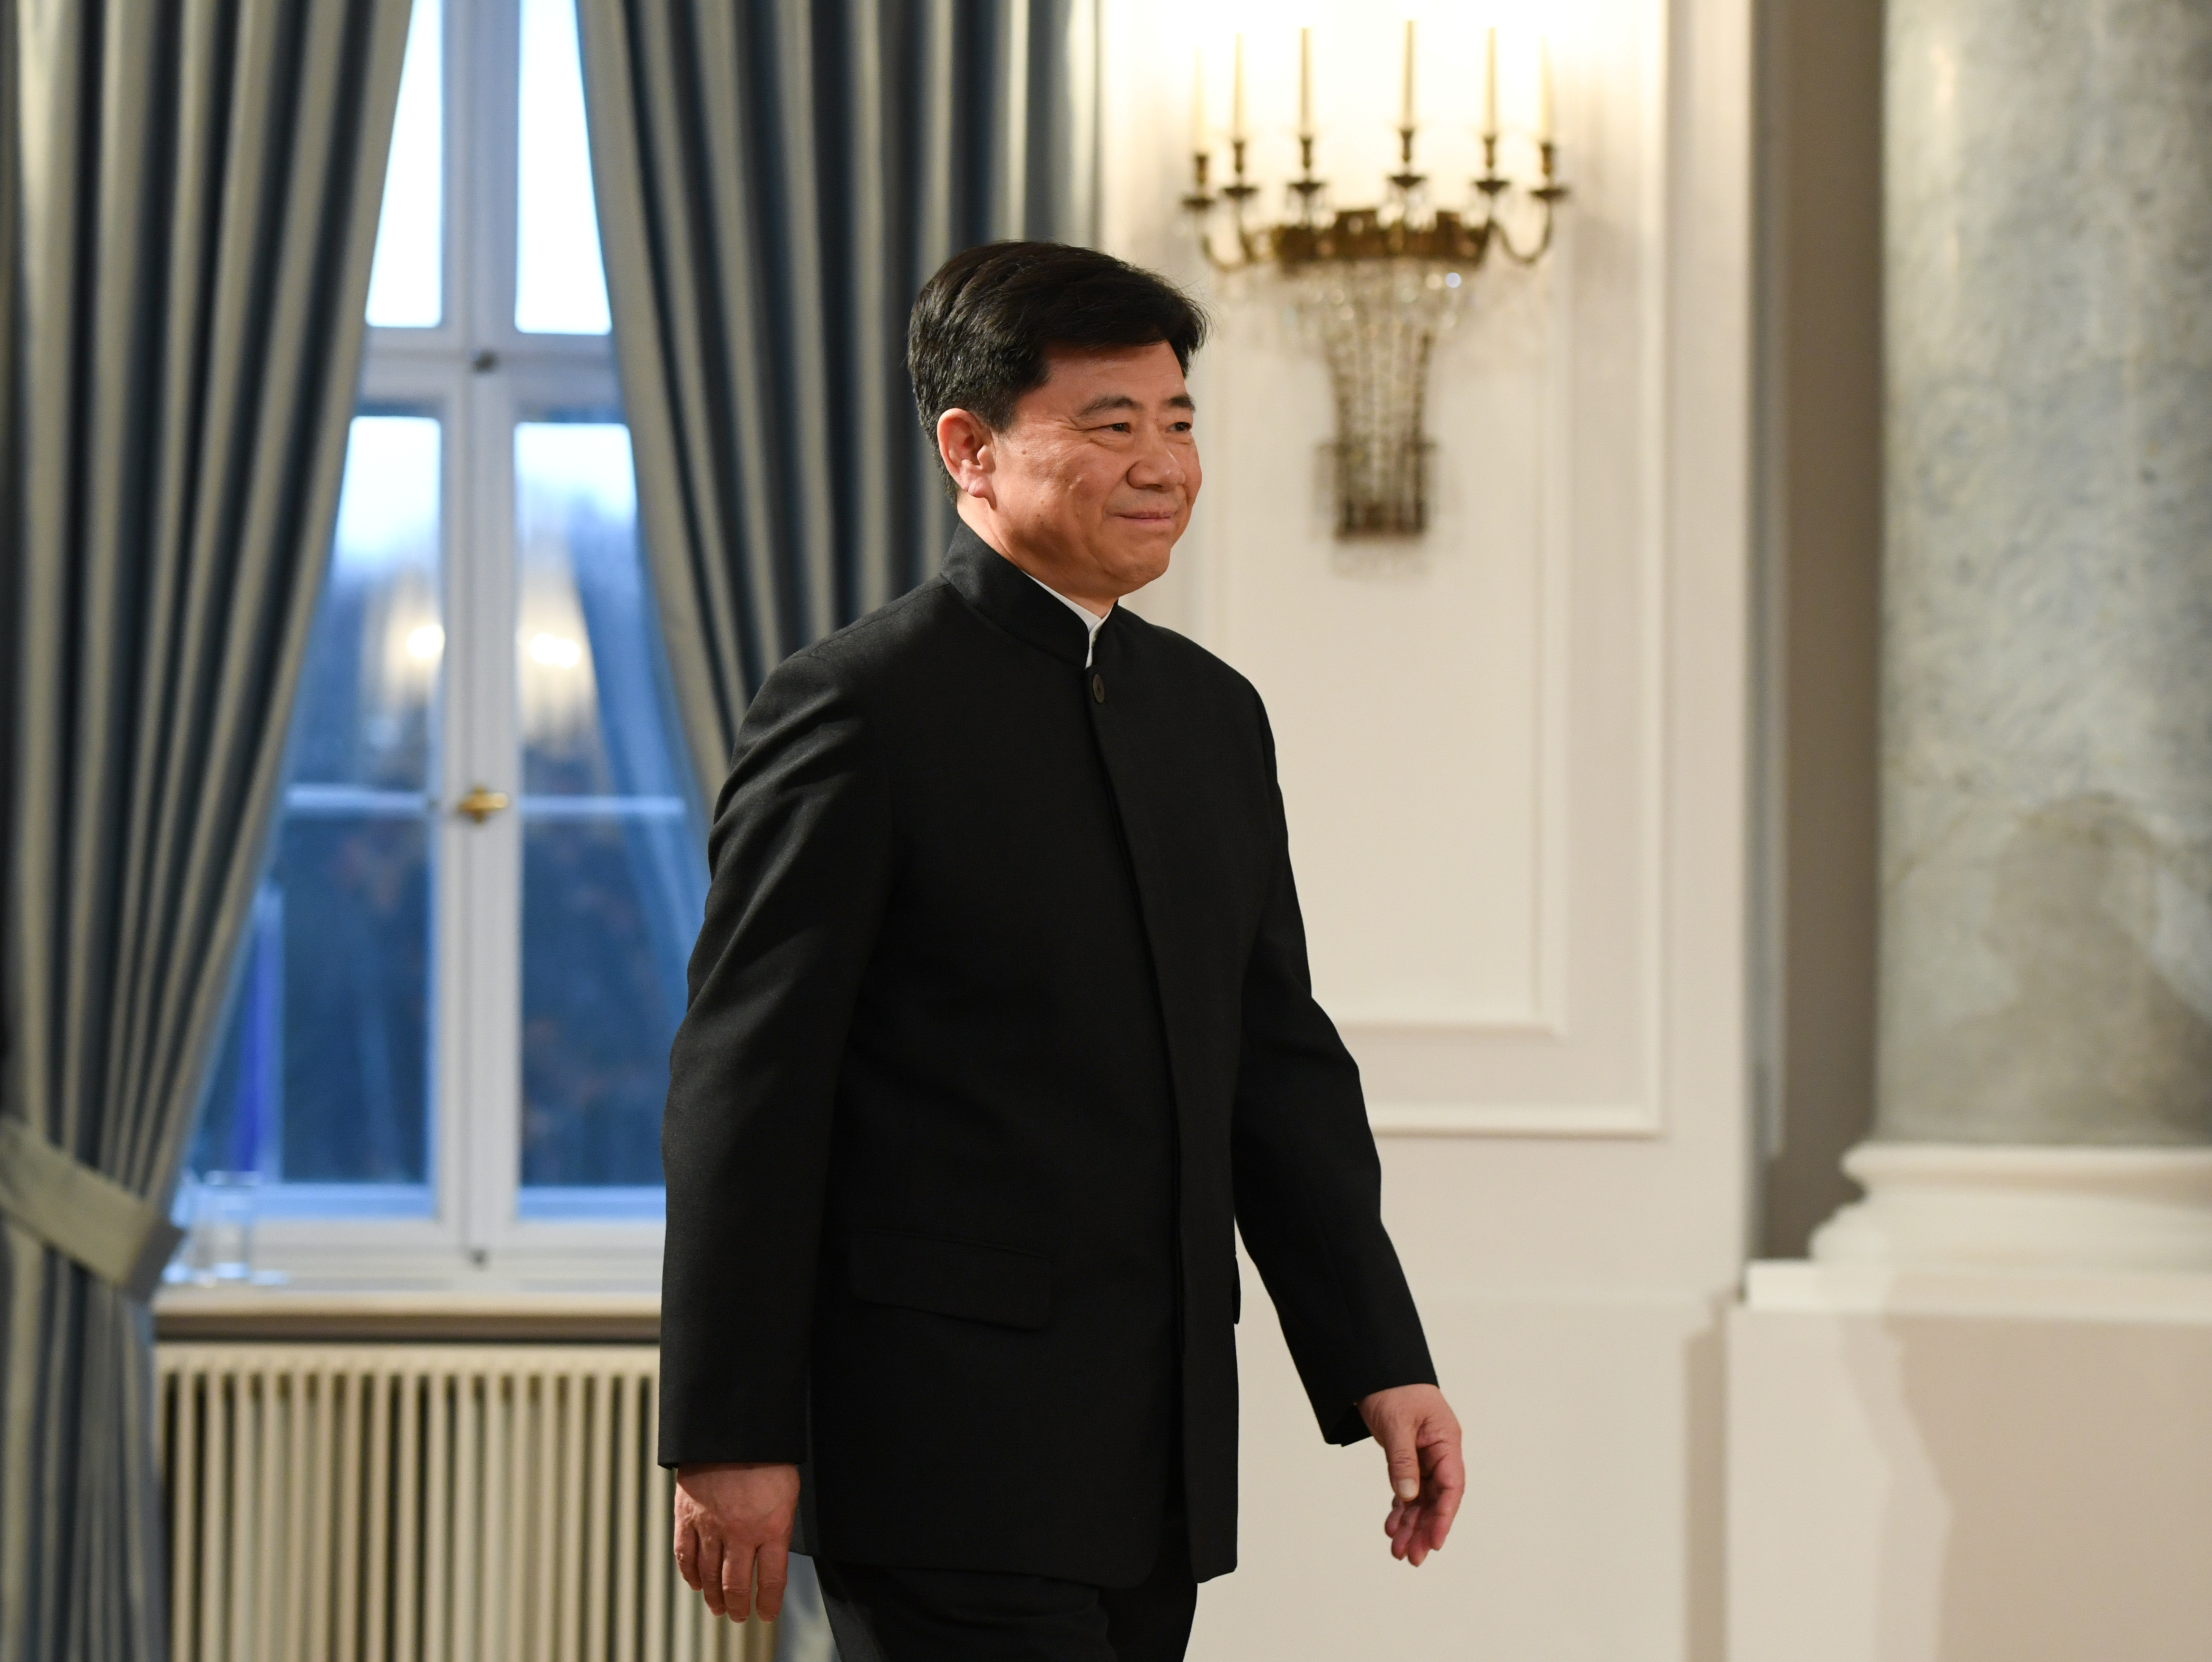 Pekin daha fazla şeffaflık istiyor, Avrupa’dan Çin’e saldırılar istiyor: Büyükelçi